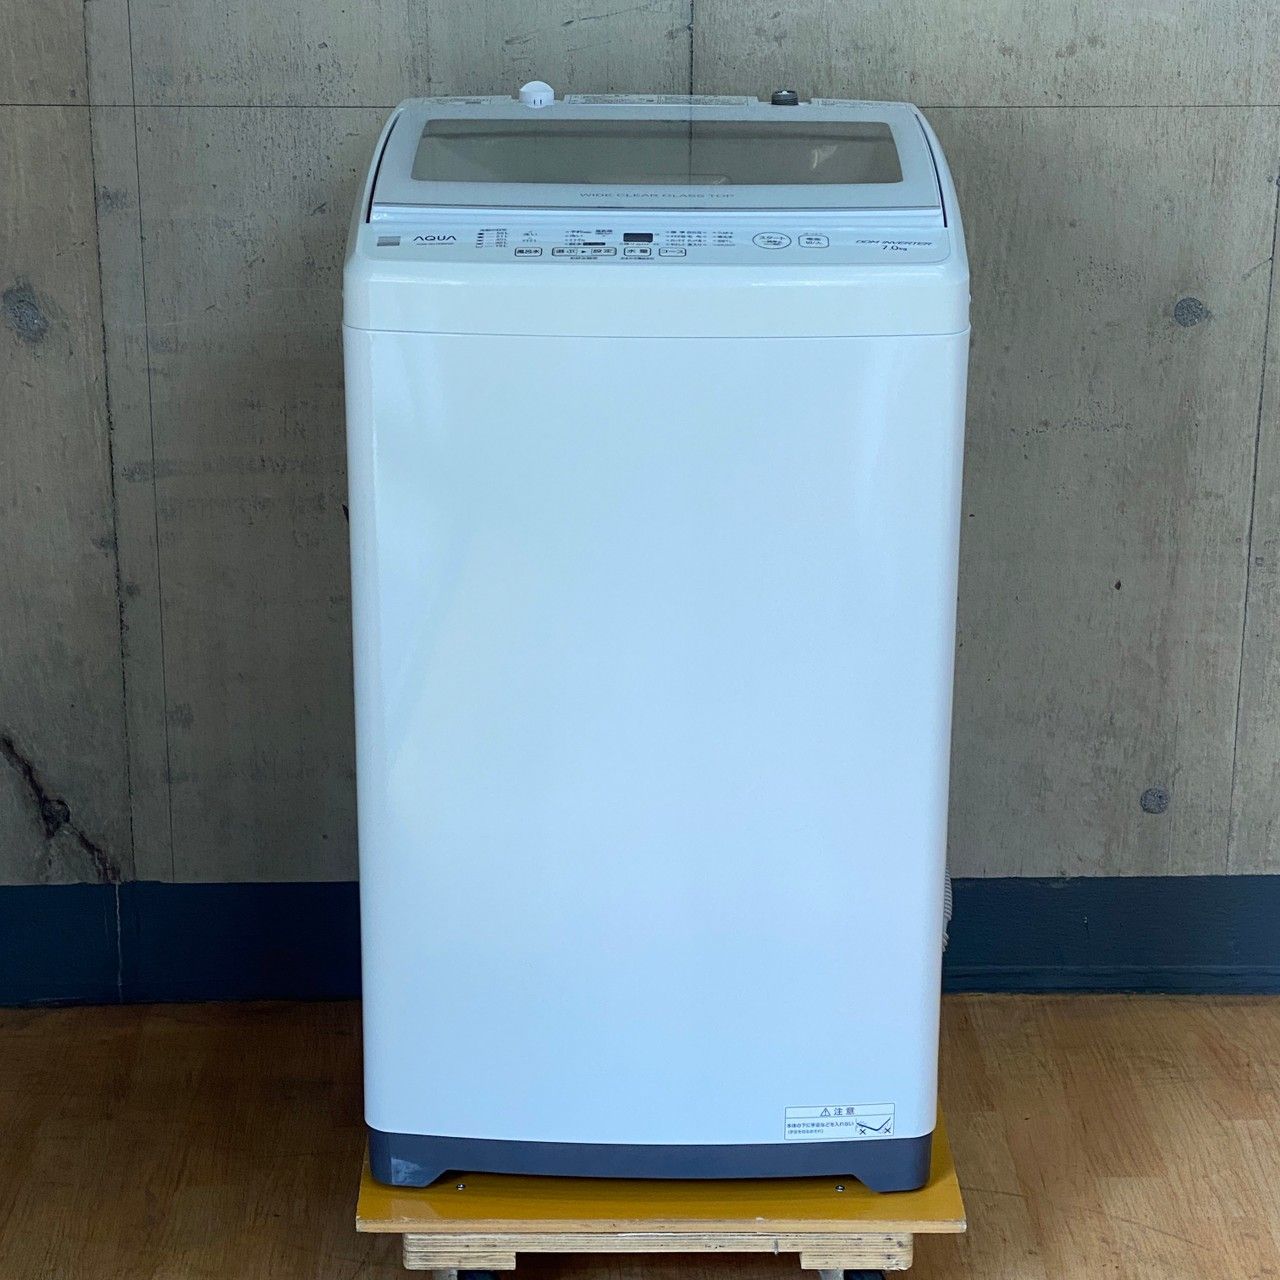 AQUAアクア 洗濯機 AQW-GV7E8 2021年製 7㎏ - 生活家電